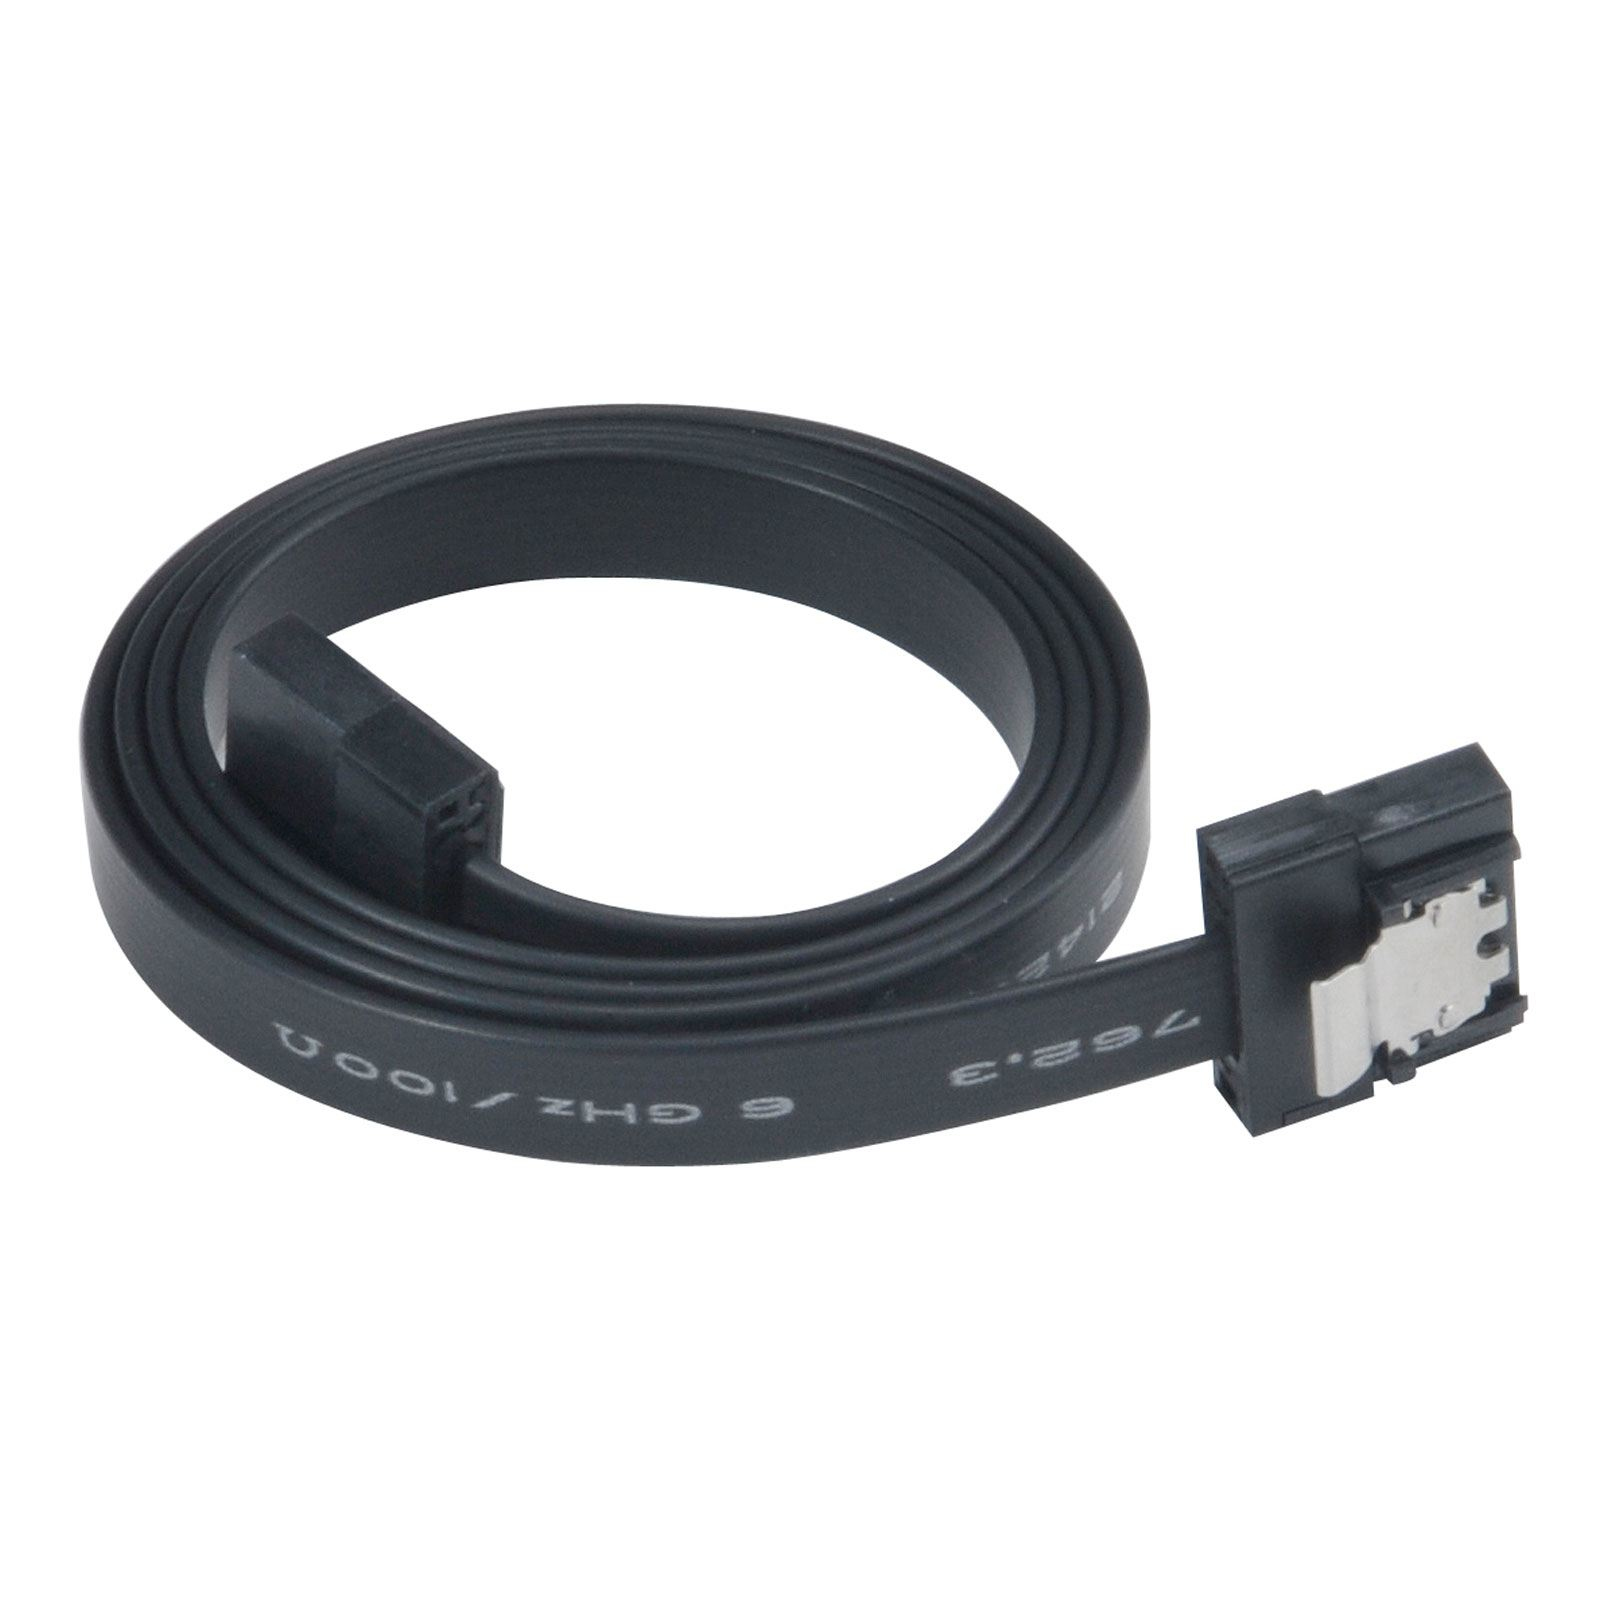 Akasa super slim sata rev 3.0 data cable with securing latches - 30cm, black, *SATAM